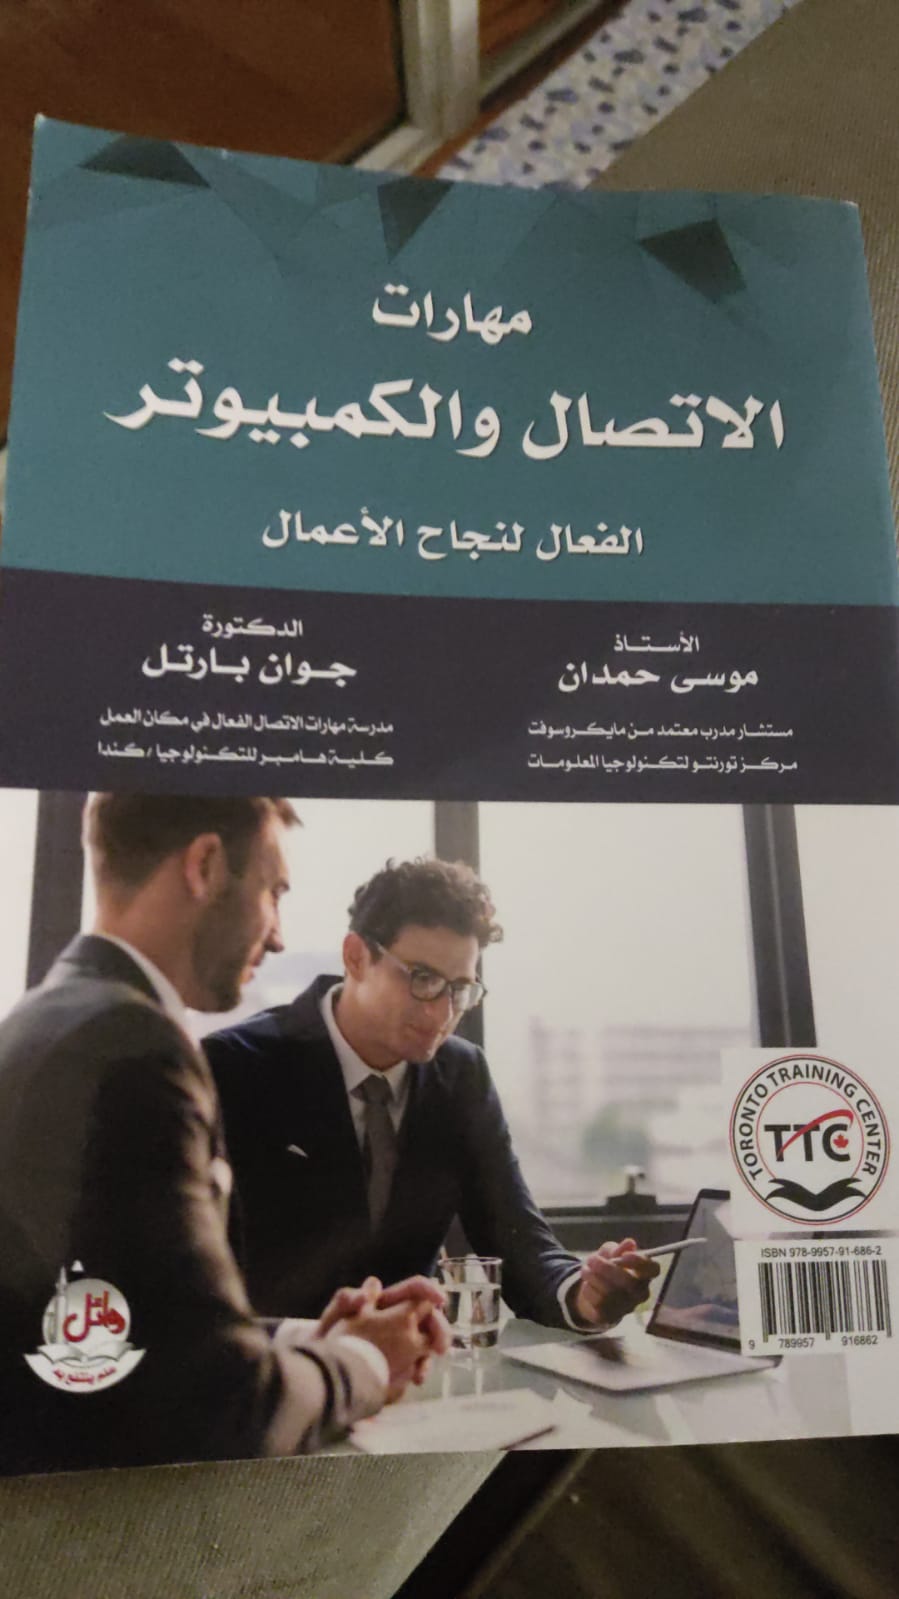 مشترك بين حمدان وبارتل إصدار كتاب التواصل الفعال ومهارات العمل الإداري باللغتين العربية والإنجليزية